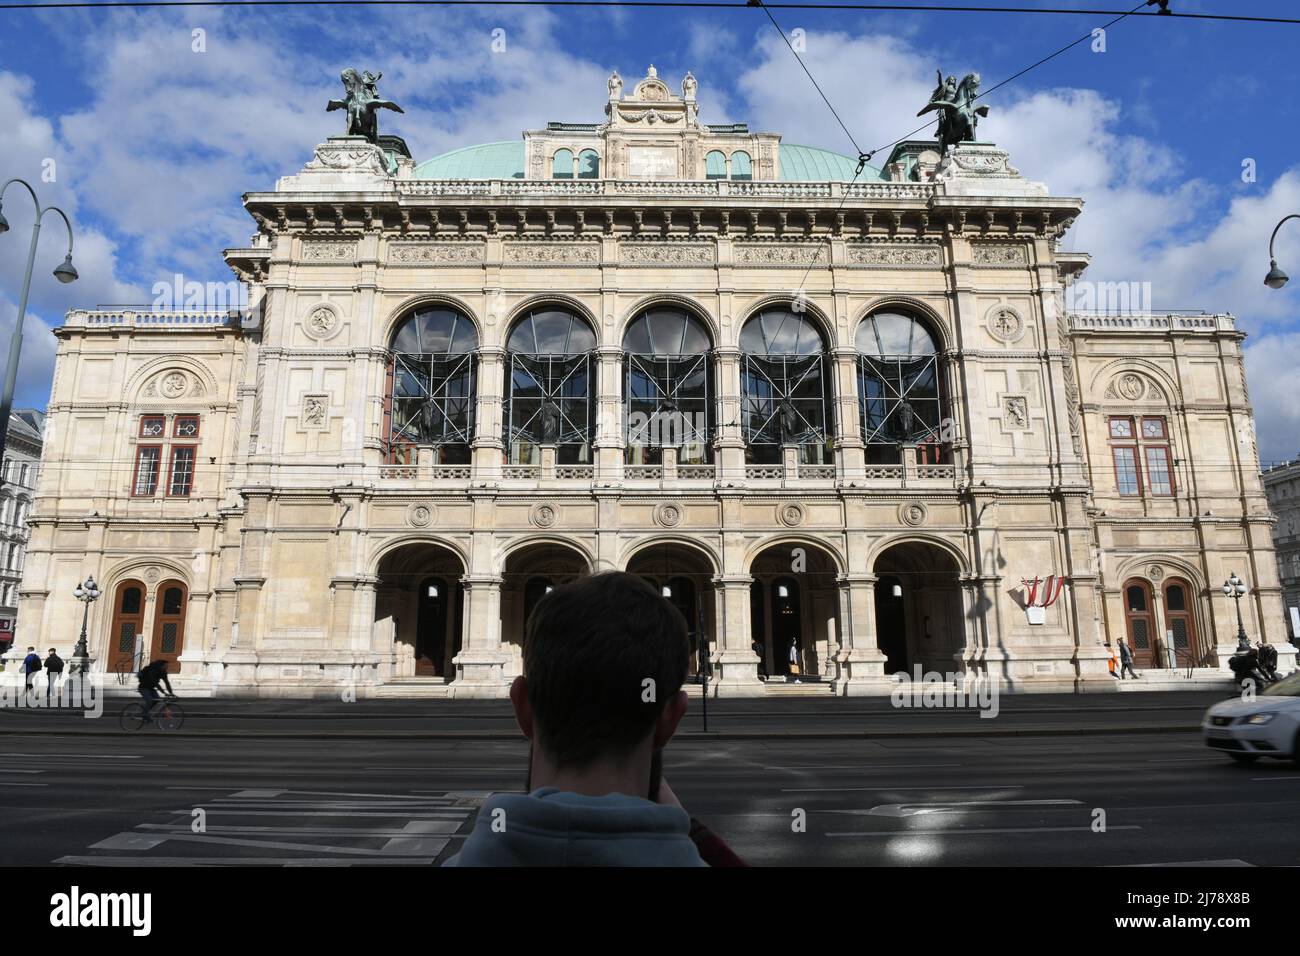 Die Staatsoper an der Ringstraße in Wien, Österreich - The State Opera on the Ringstrasse in Vienna, Austria Stock Photo